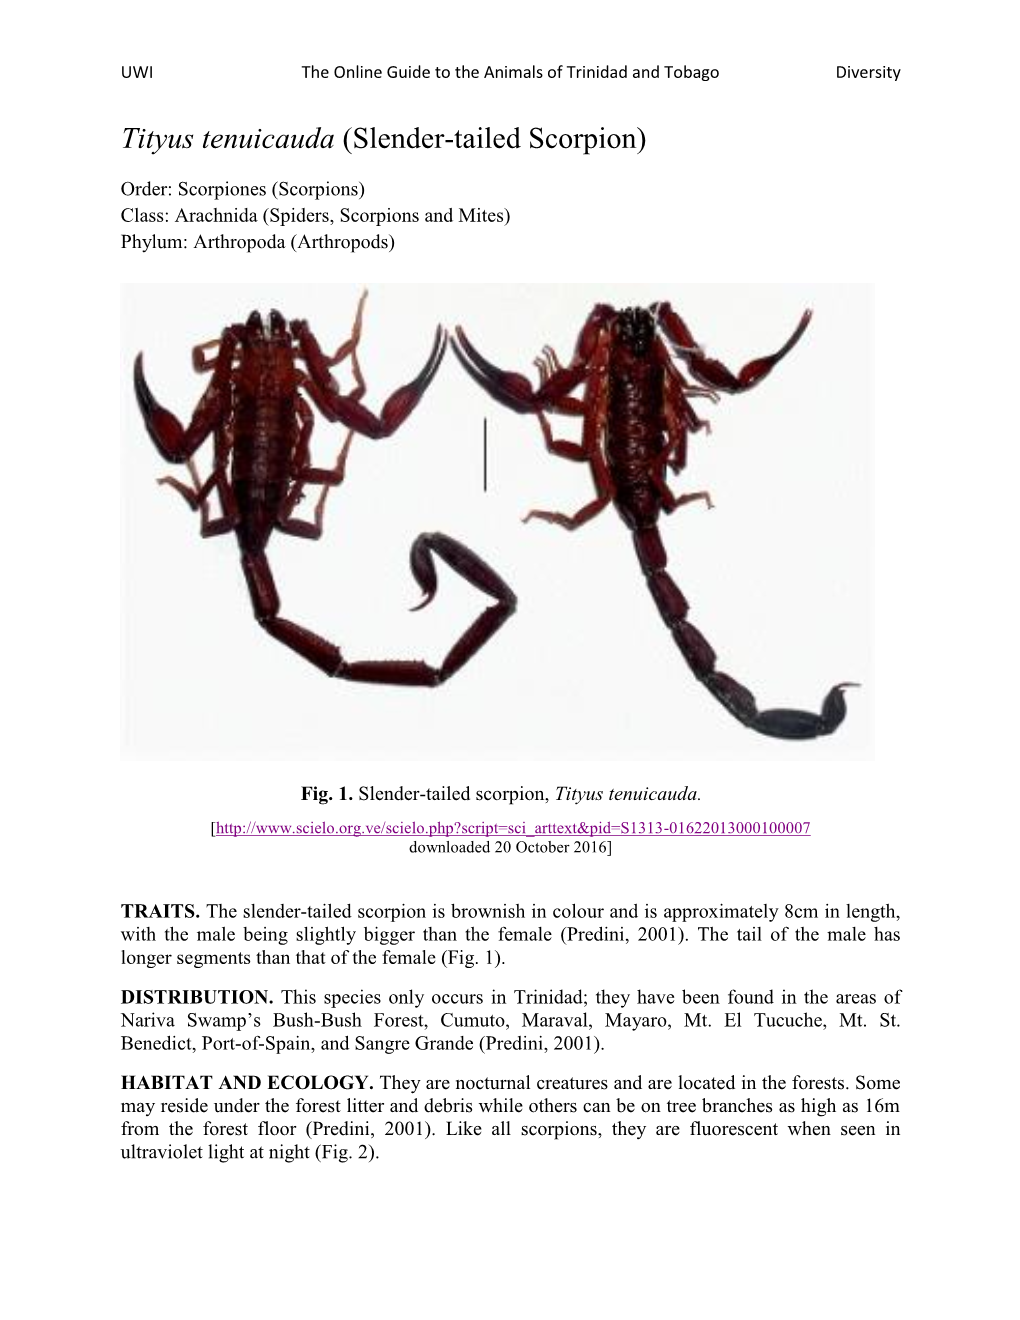 Tityus Tenuicauda (Slender-Tailed Scorpion)